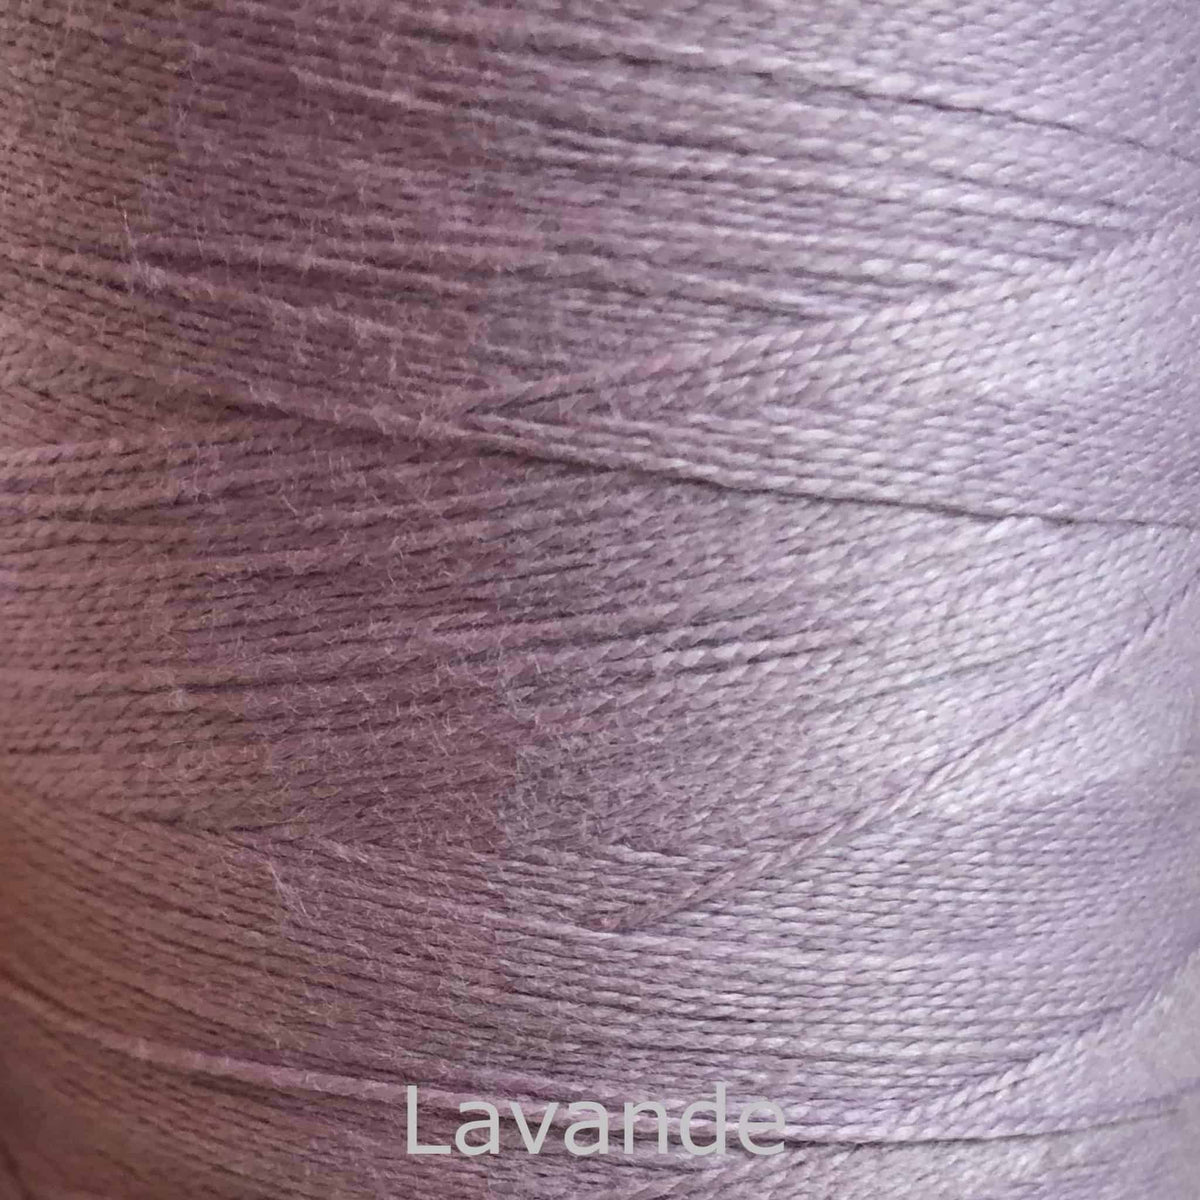 16/2 cotton weaving yarn lavander